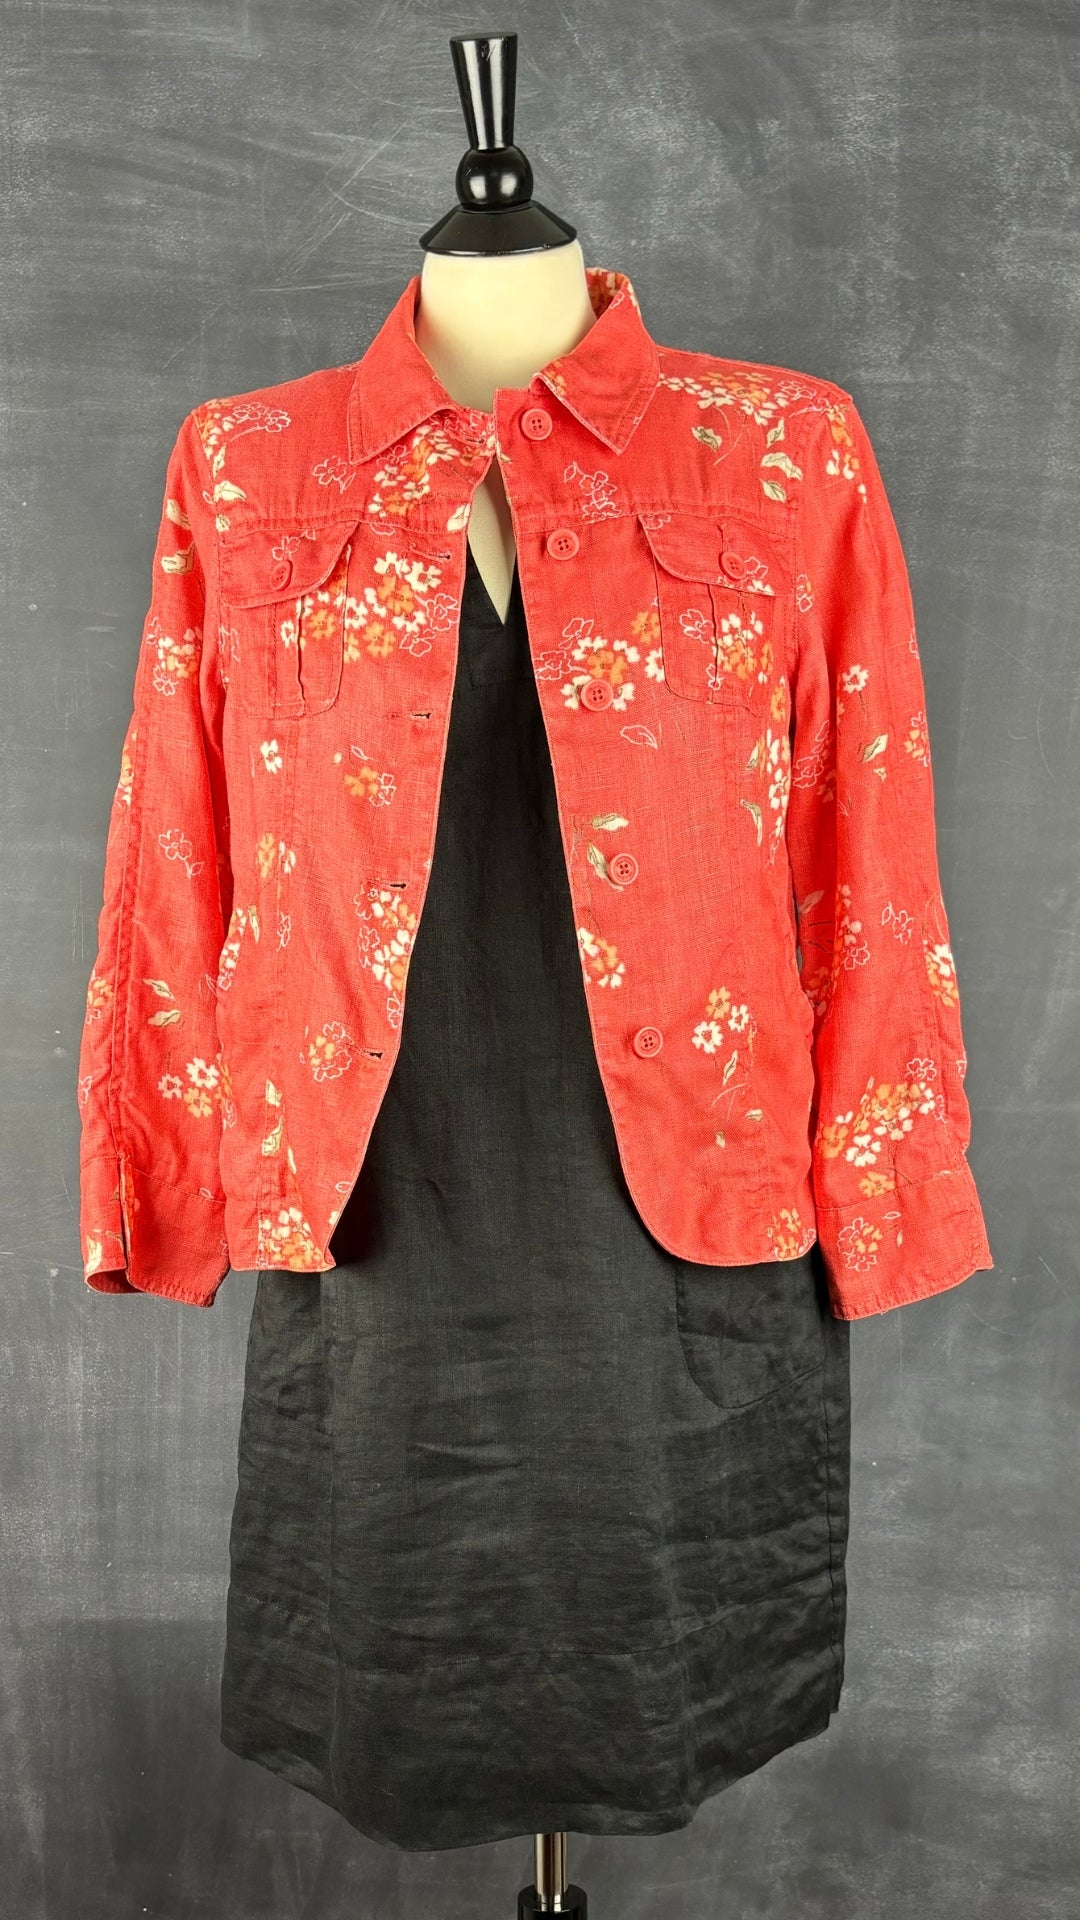 Veste florale corail en lin Jackpot, taille estimée medium. Vue de l'agencement avec la robe en lin noire Theory.